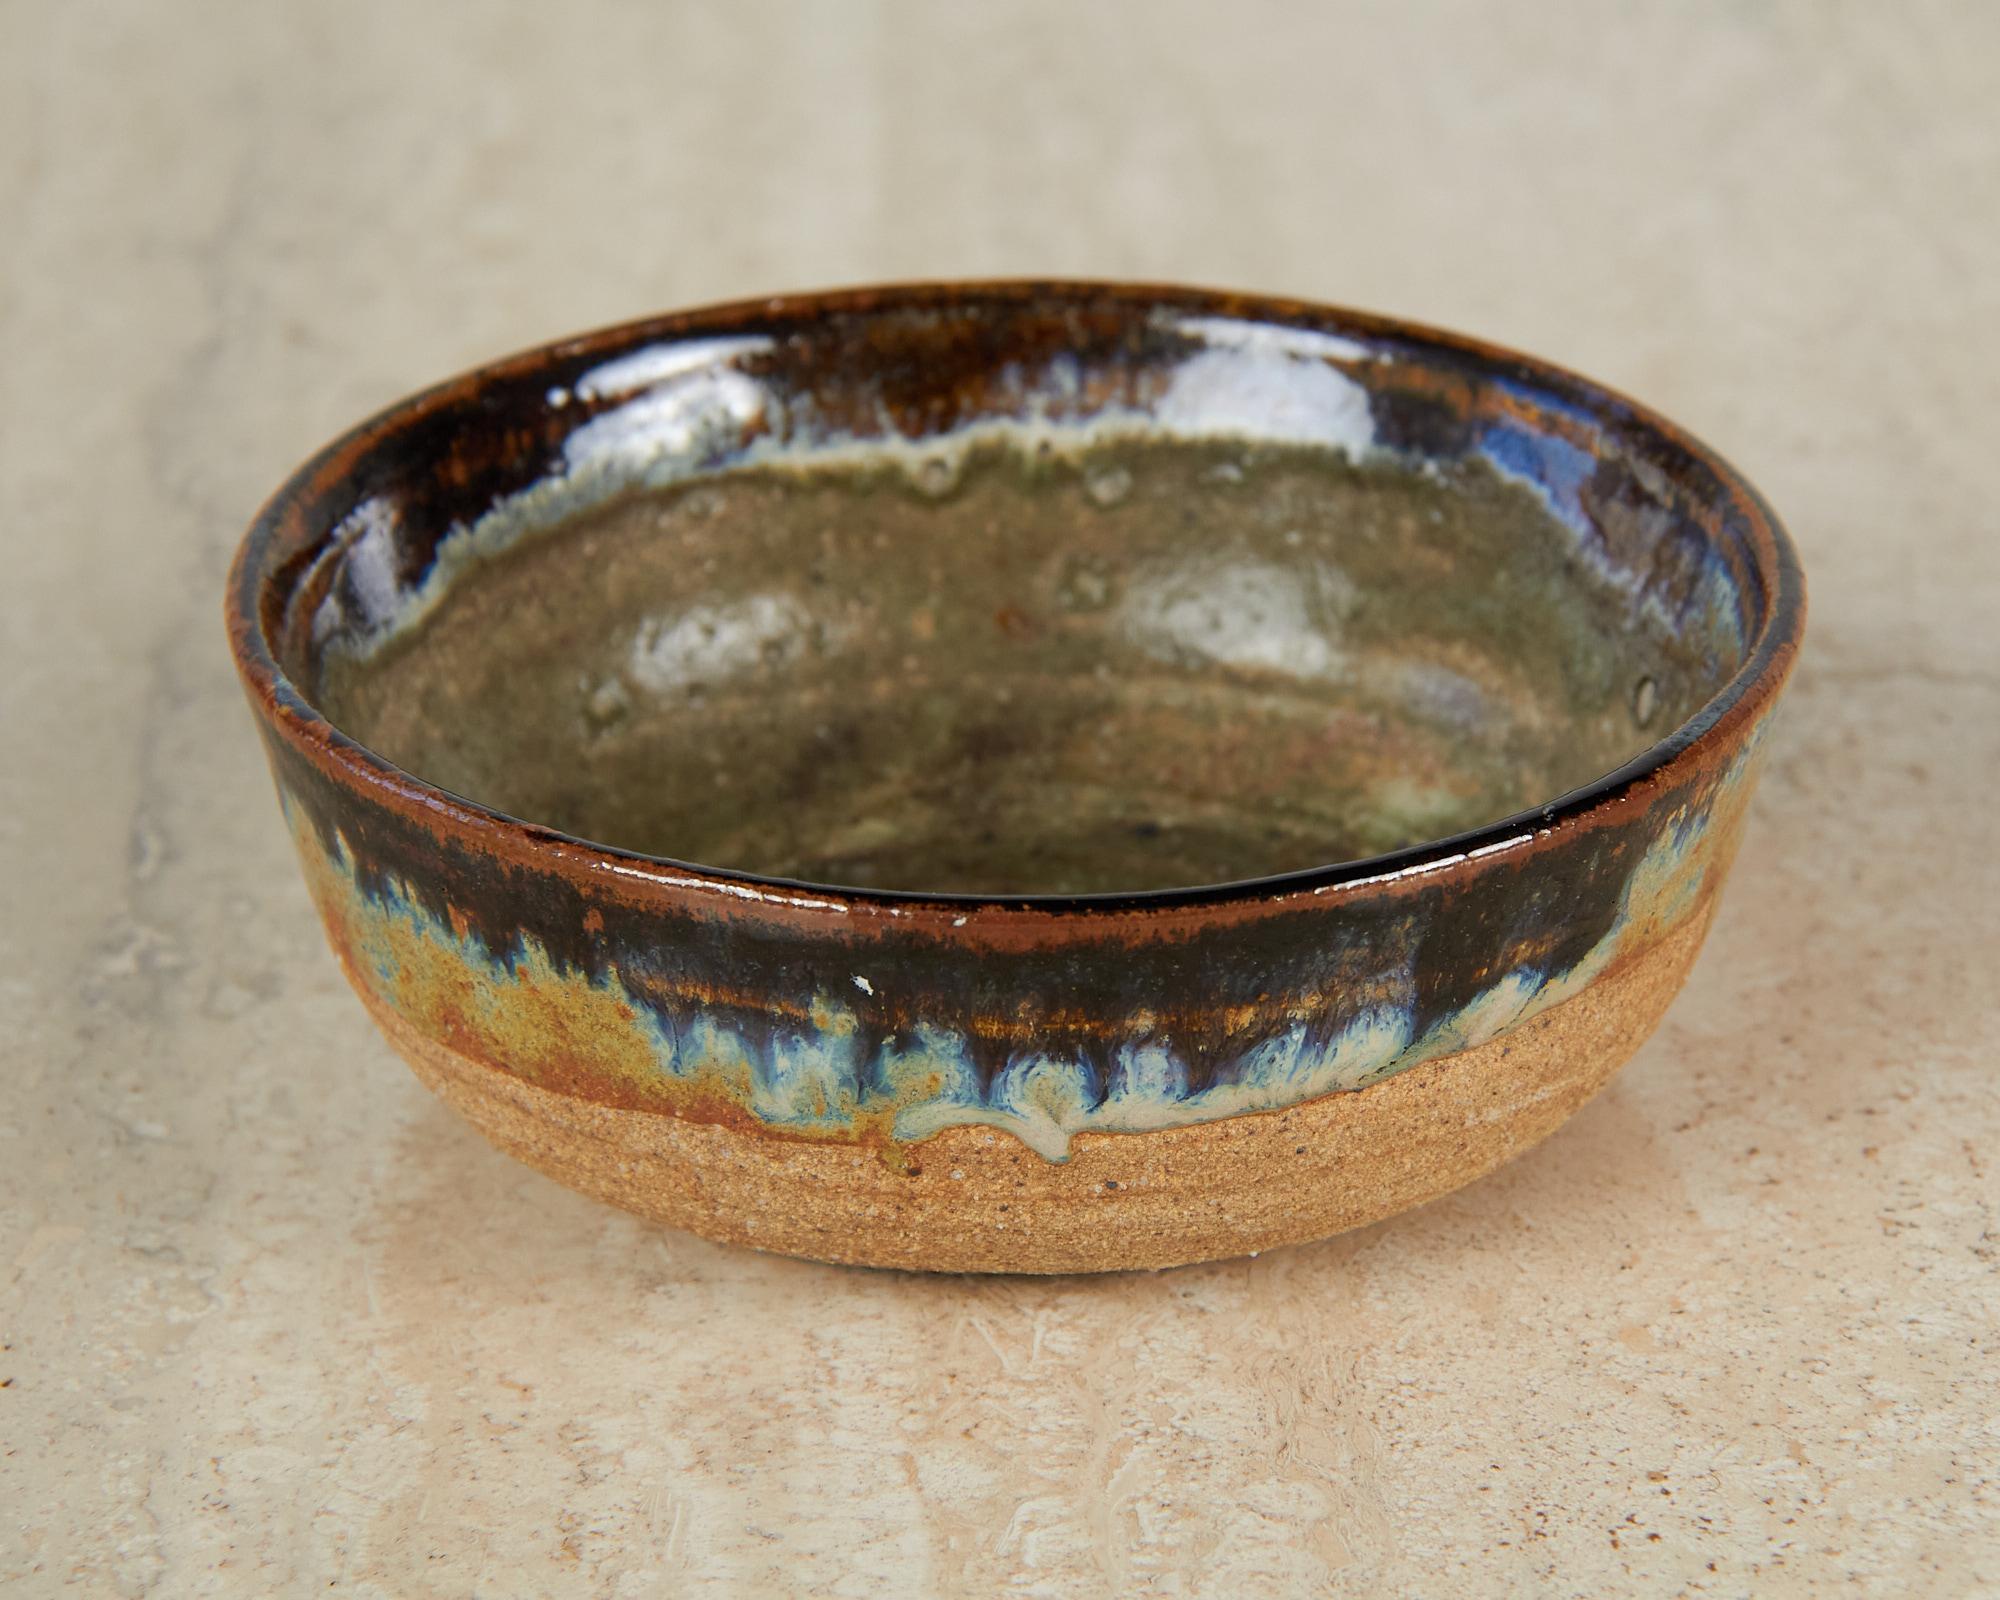 Glazed Stoneware Studio Ceramic Bowl with Glaze